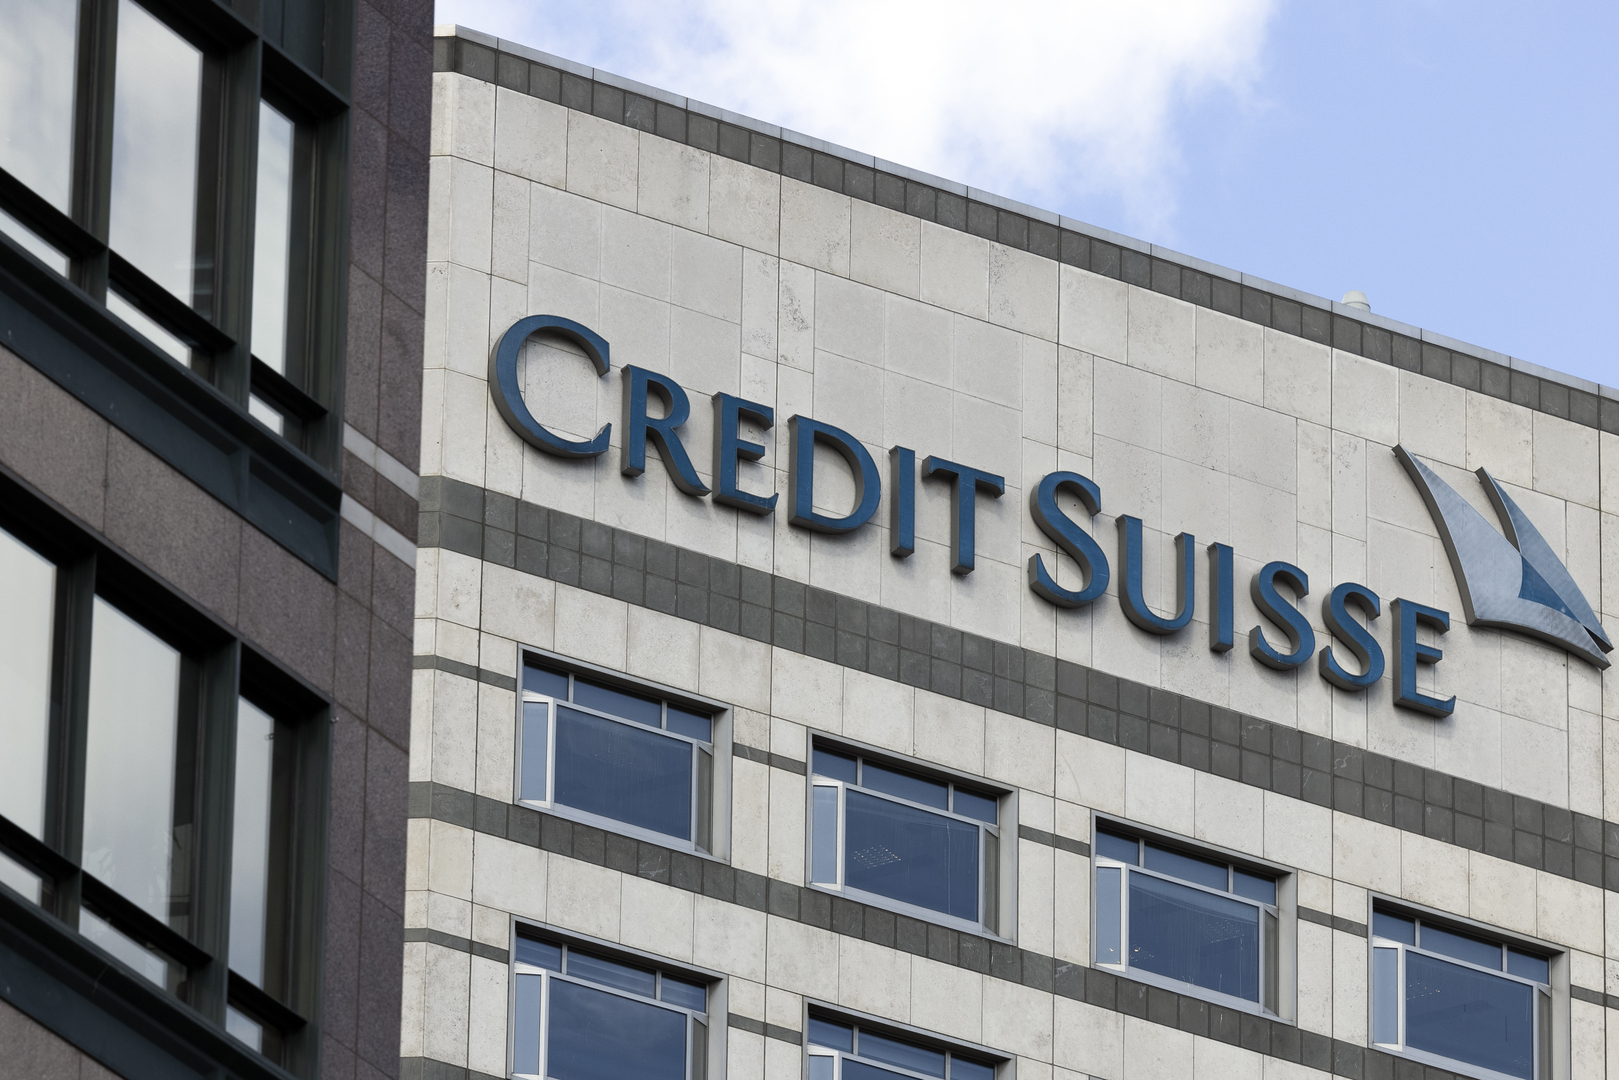 معلومات مسربة تؤكد امتلاك رجل أعمال سوري حسابا مصرفيا في أغنى البنوك السويسرية